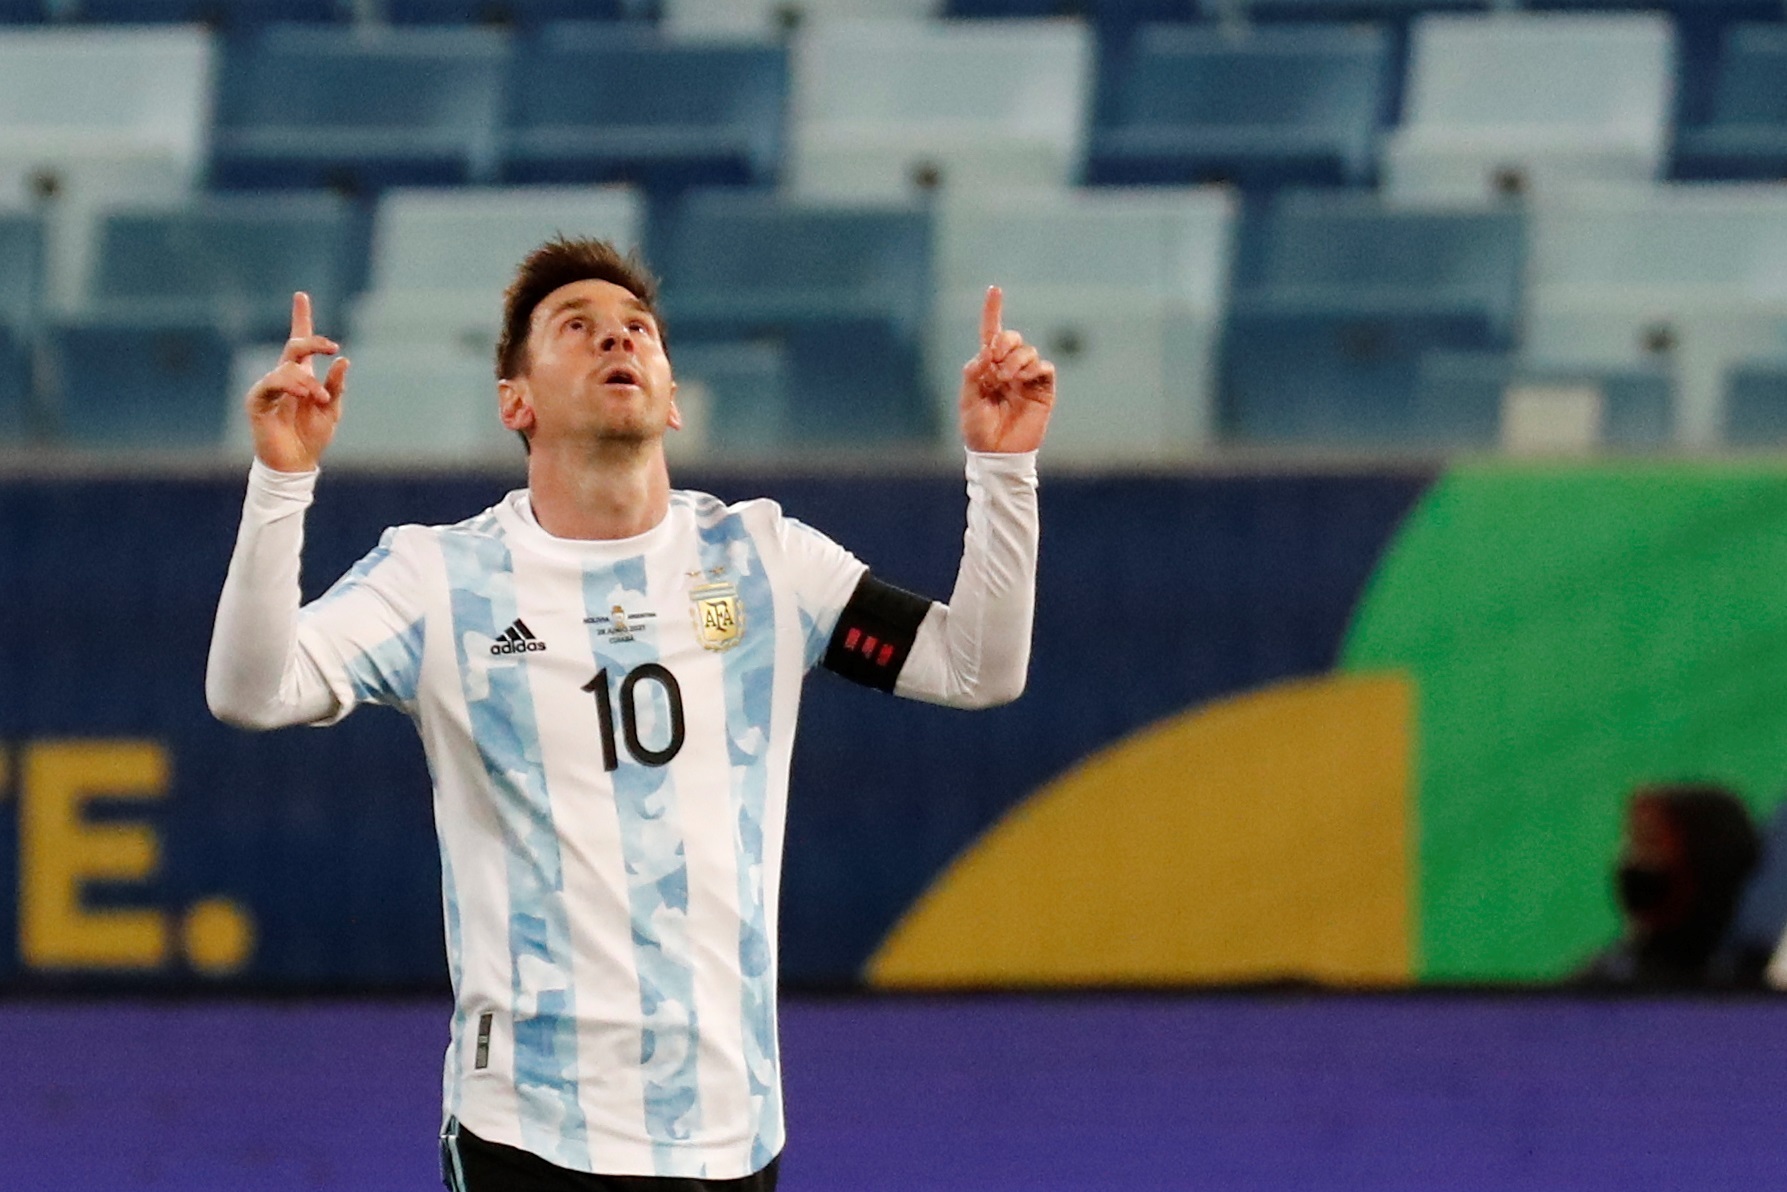 La insólita oferta que le hizo el “peor equipo del mundo” a Messi